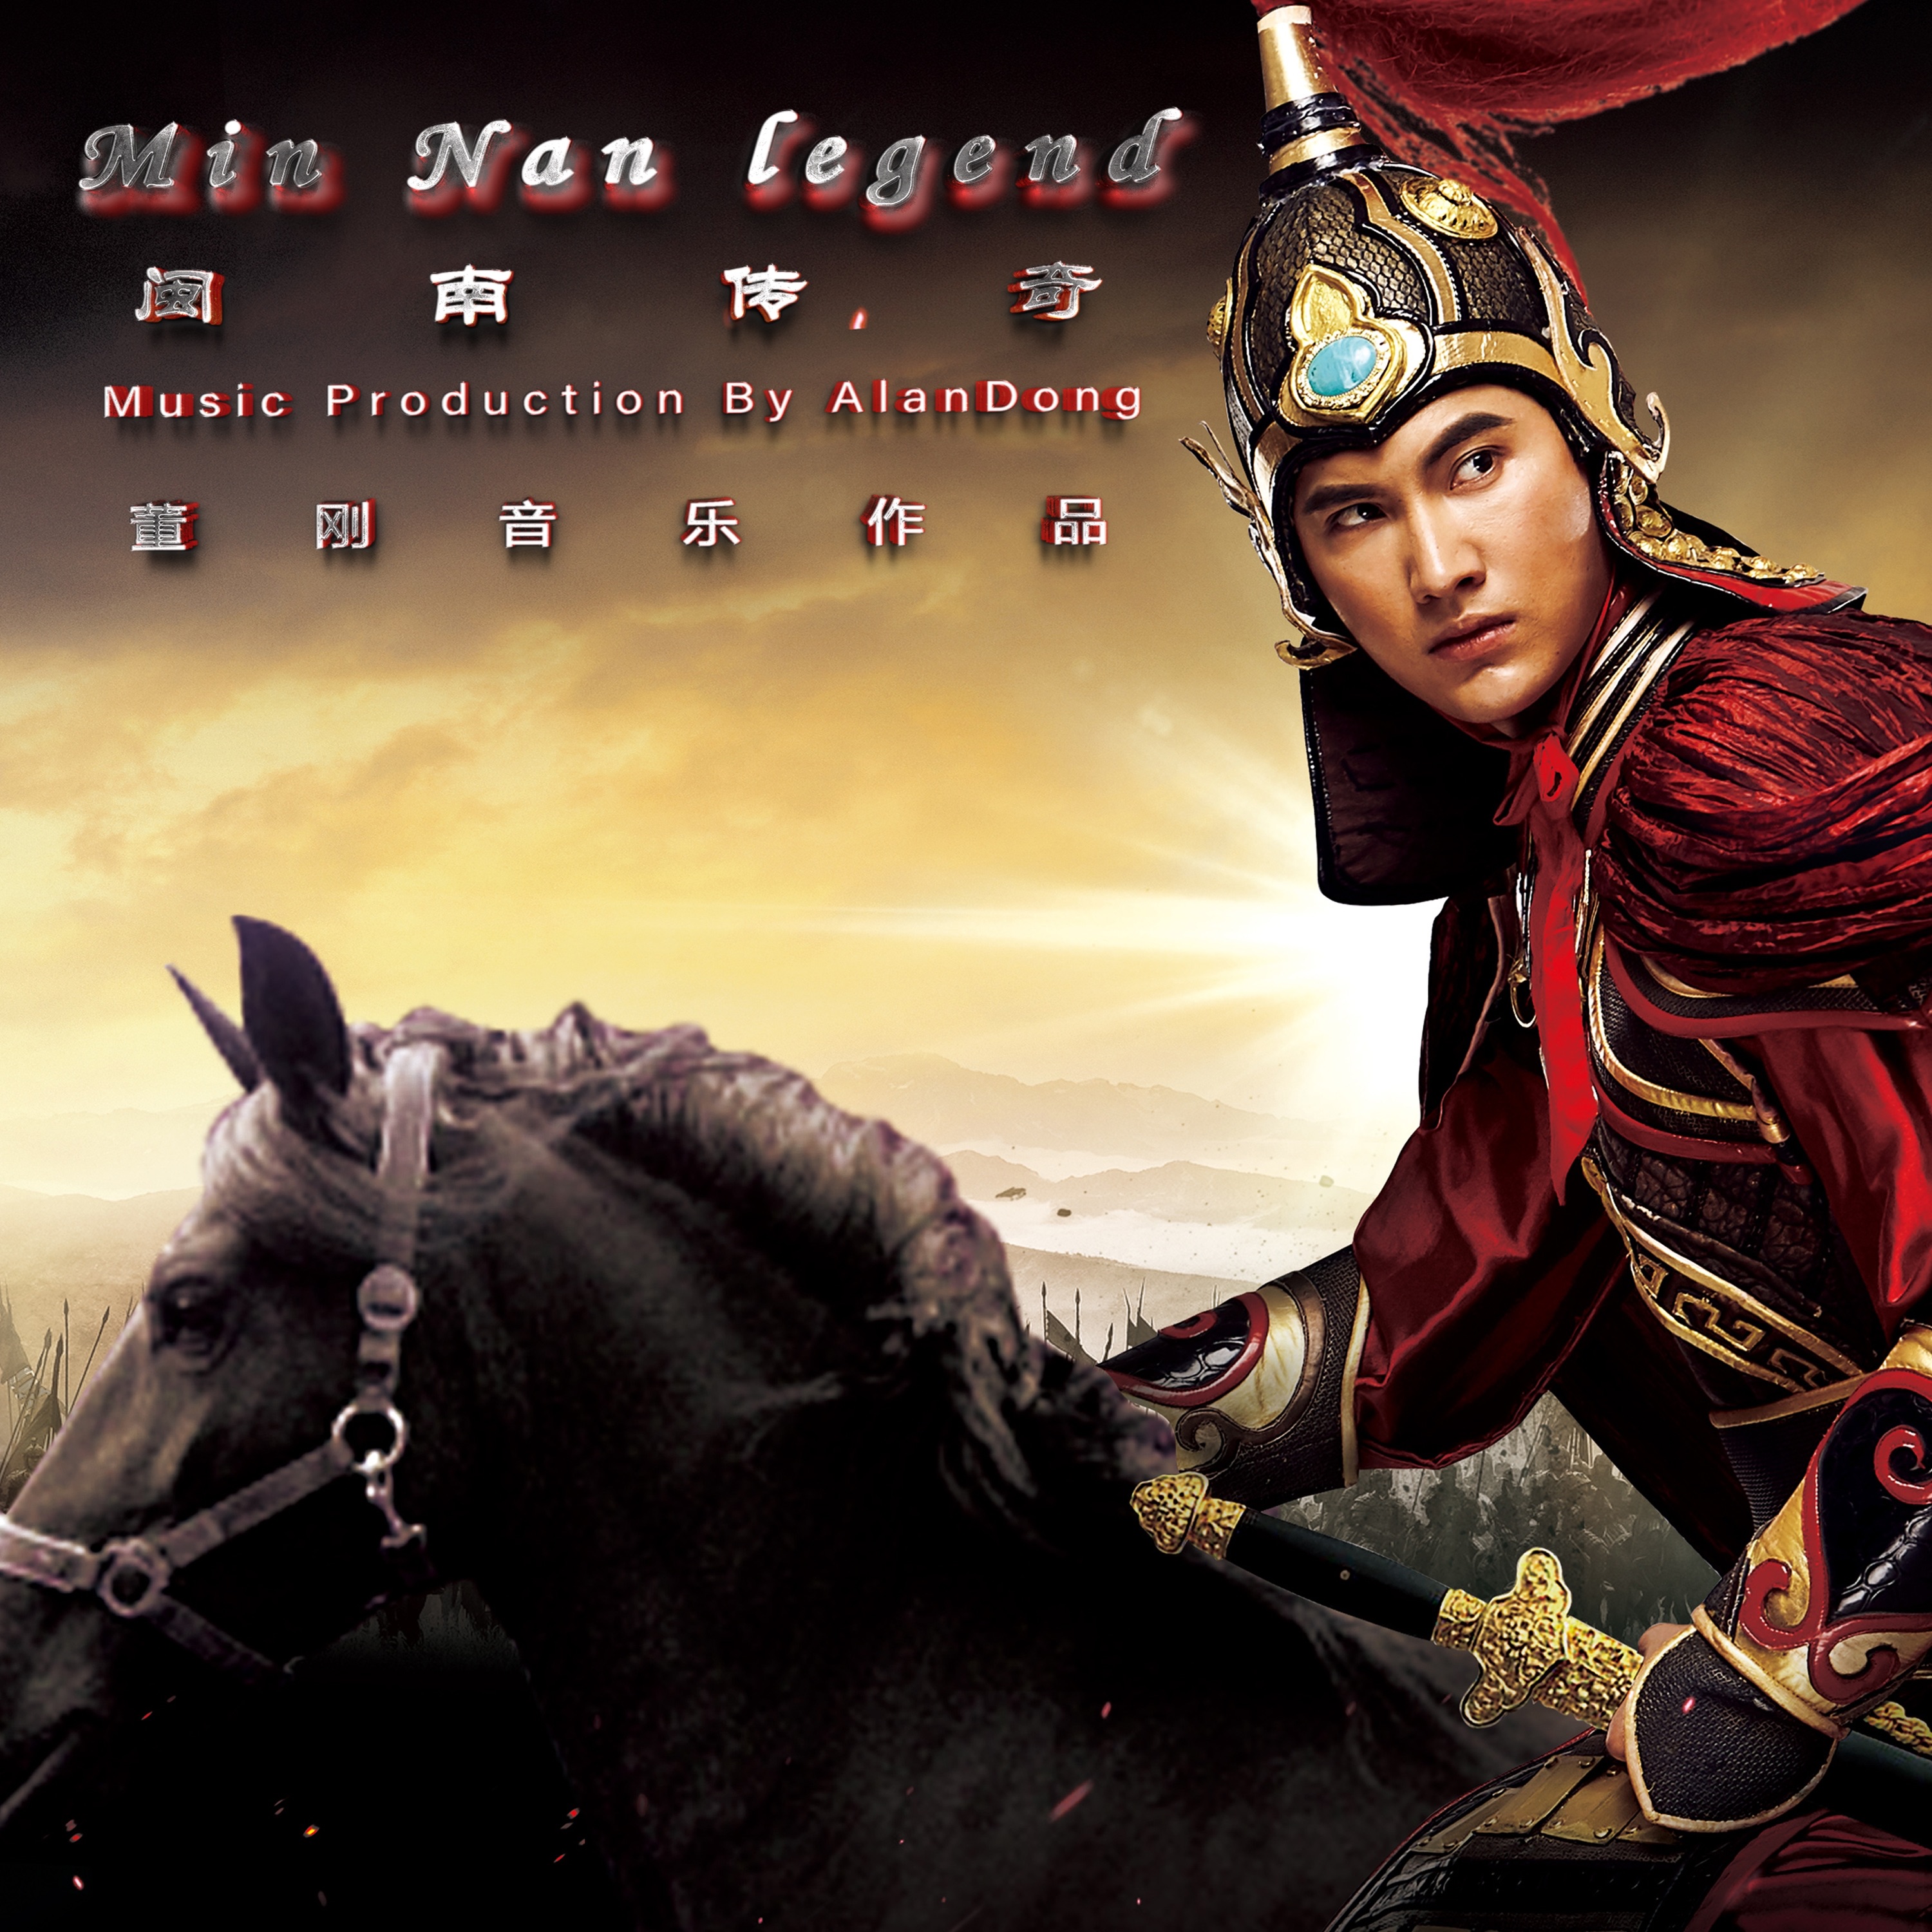 Фото 龙的传人. The Legends OST. Min nan Chinese. Sheng ru Xia Hua (生如夏花). Legend soundtrack